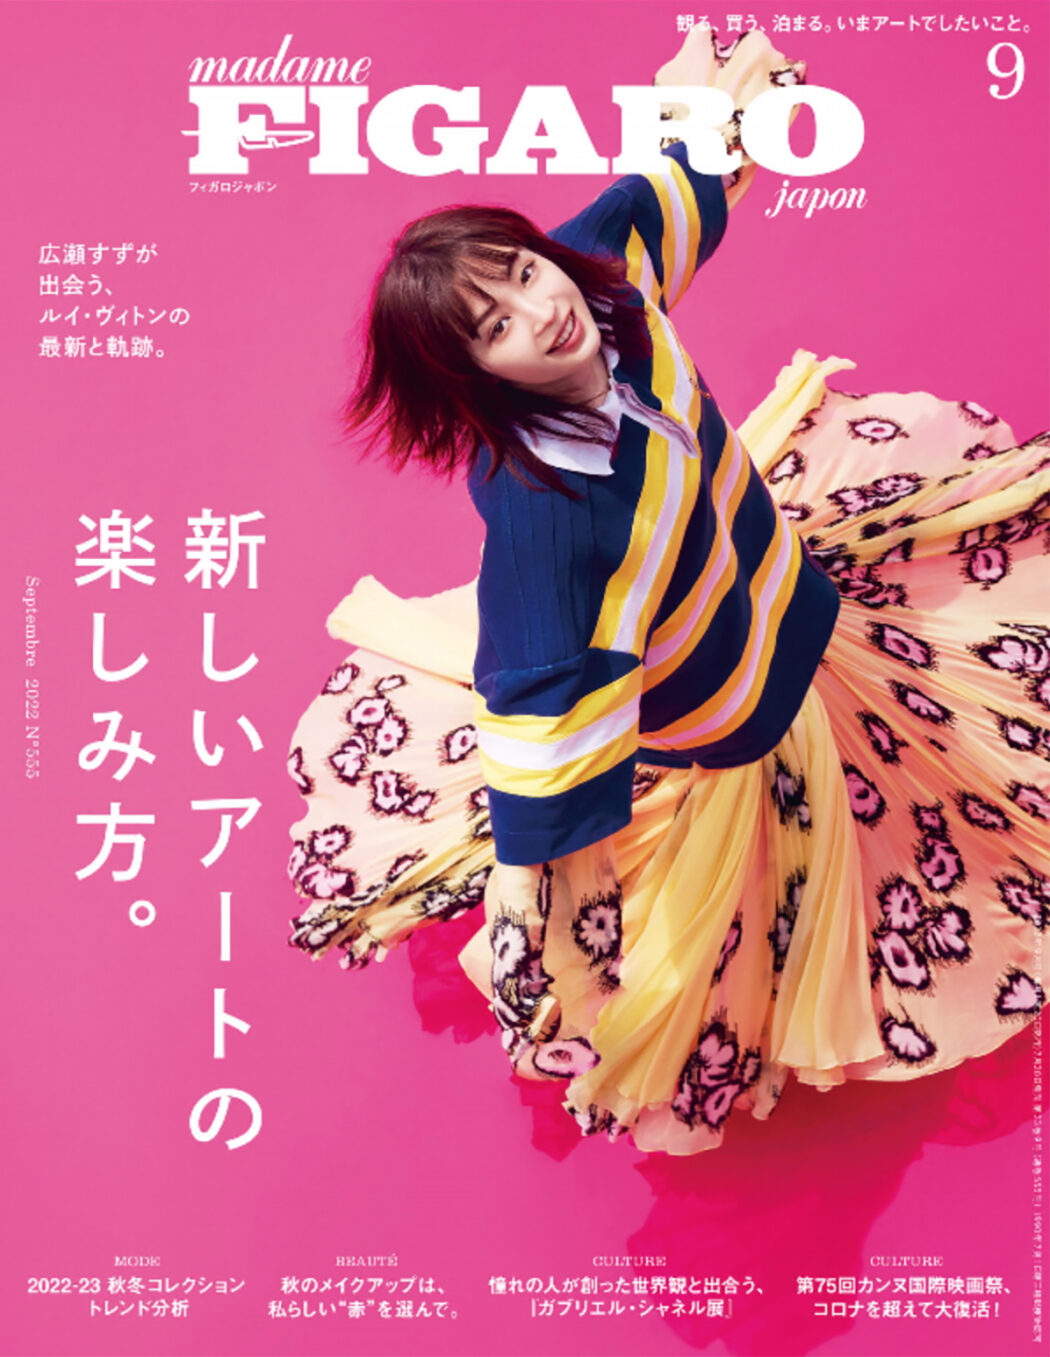 Styled by Yoko Kageyama
FIGARO japon September issue 2022